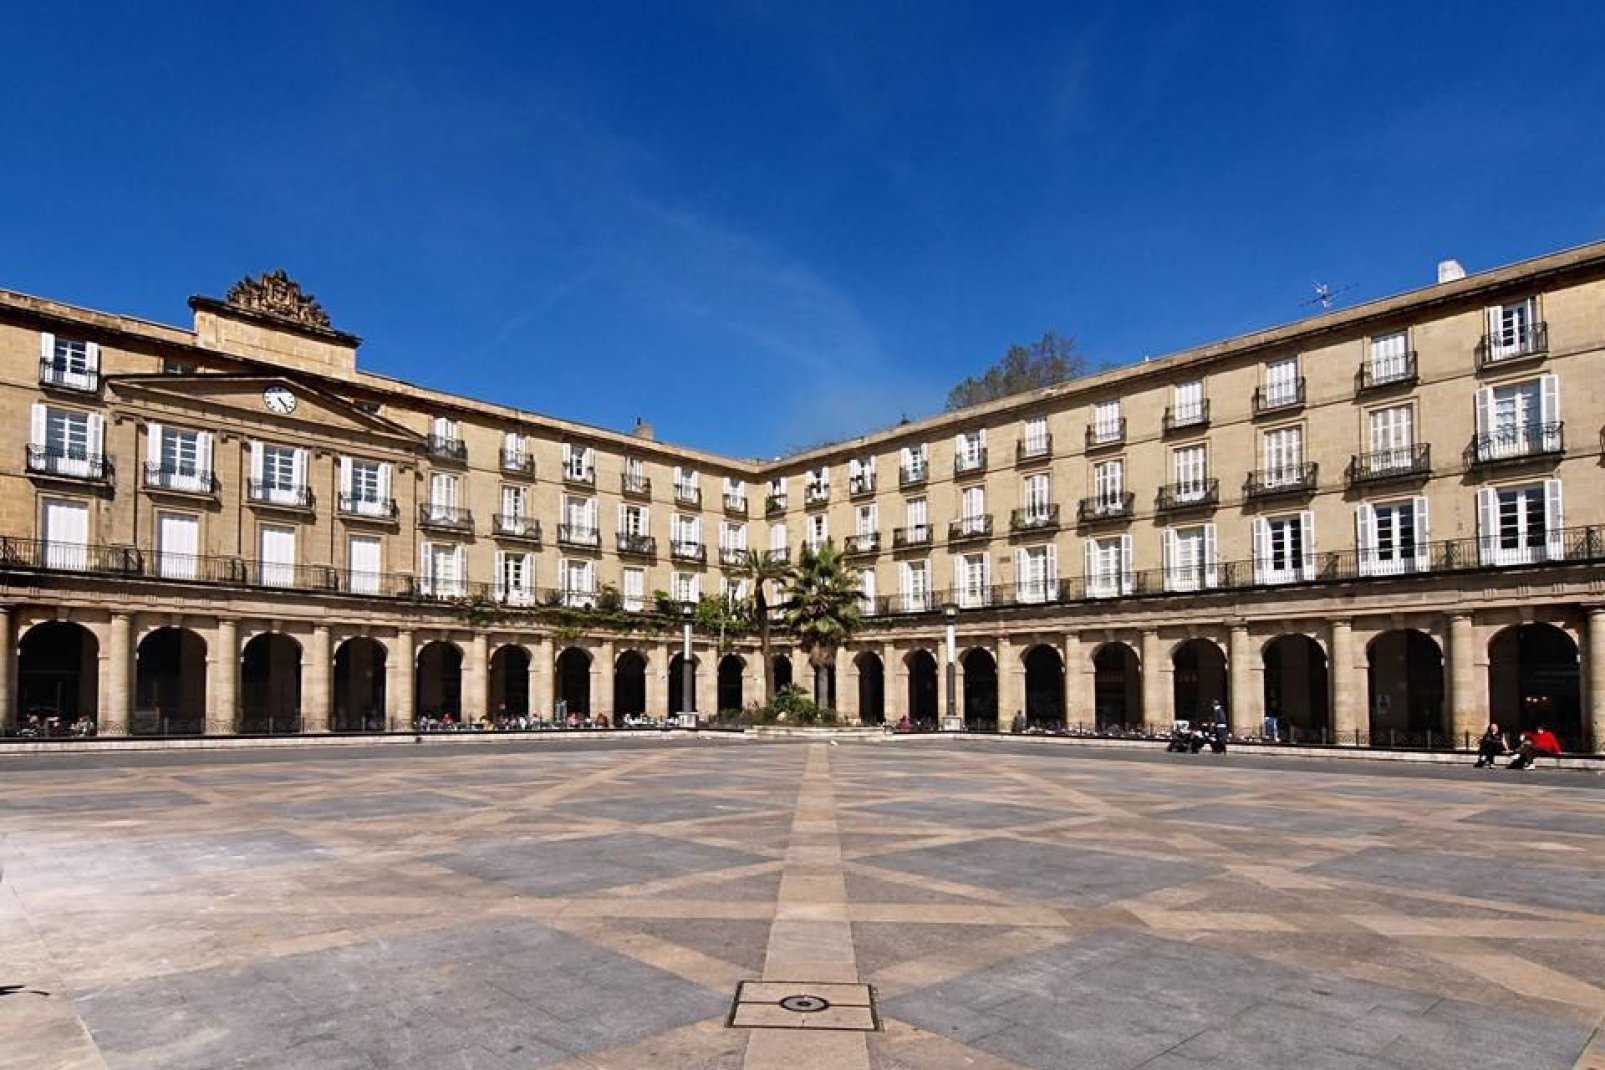 Das Gebäude der Baskischen Sprachakademie liegt am Plaza Nueva und ist ein wunderschönes Stilbeispiel der Belle Epoche (dt. Schöne Epoche).